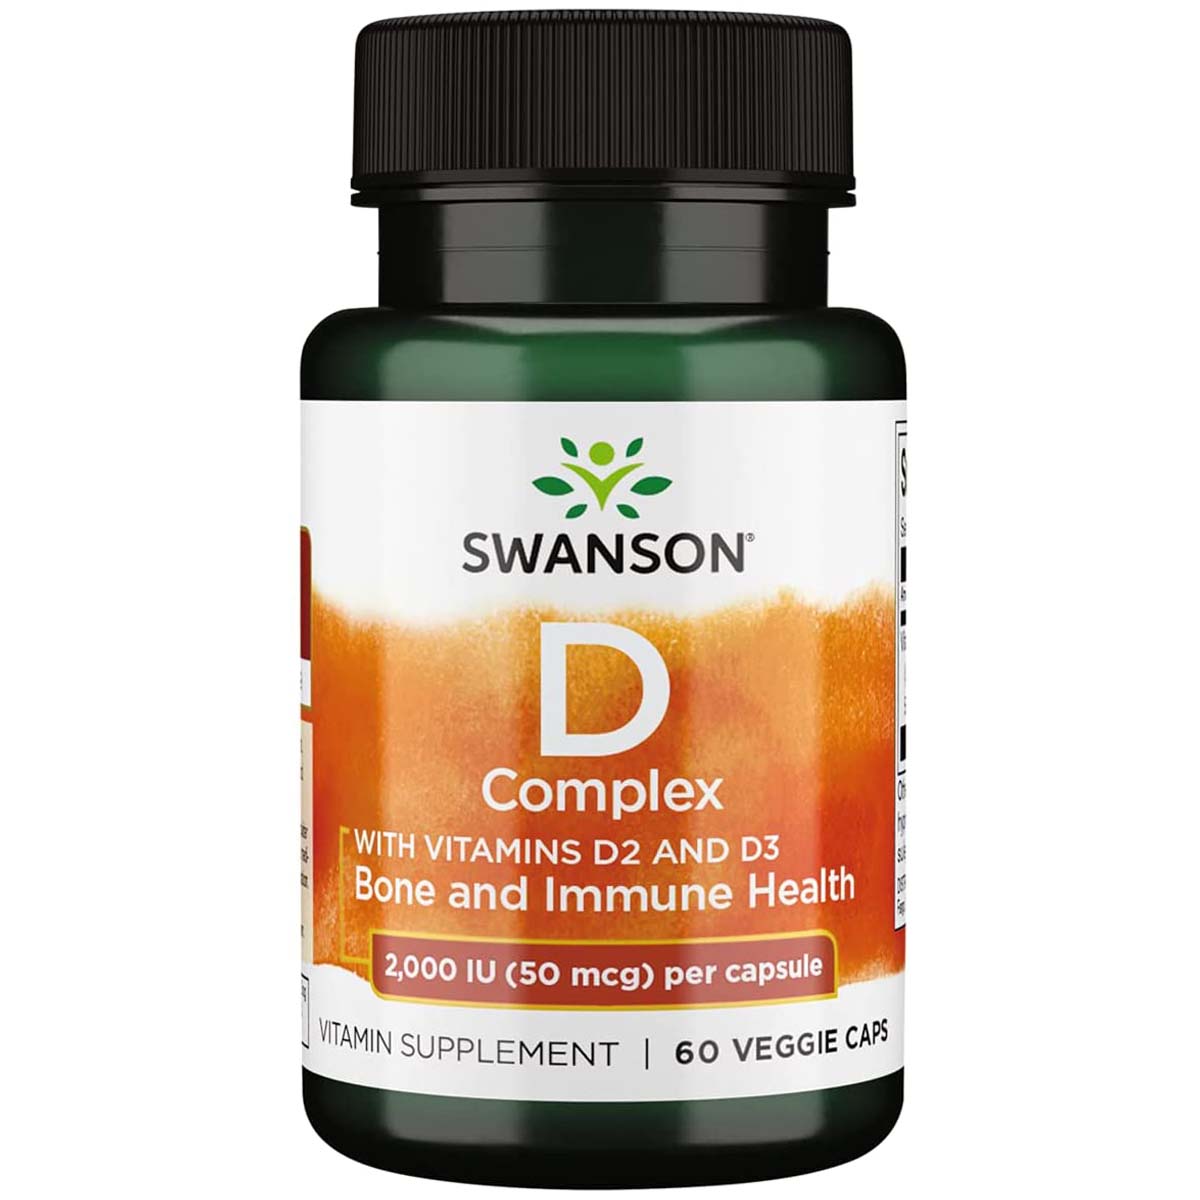 Swanson Vitamin D Complex, 2000 IU 50 mcg, 60 Veggie Capsules